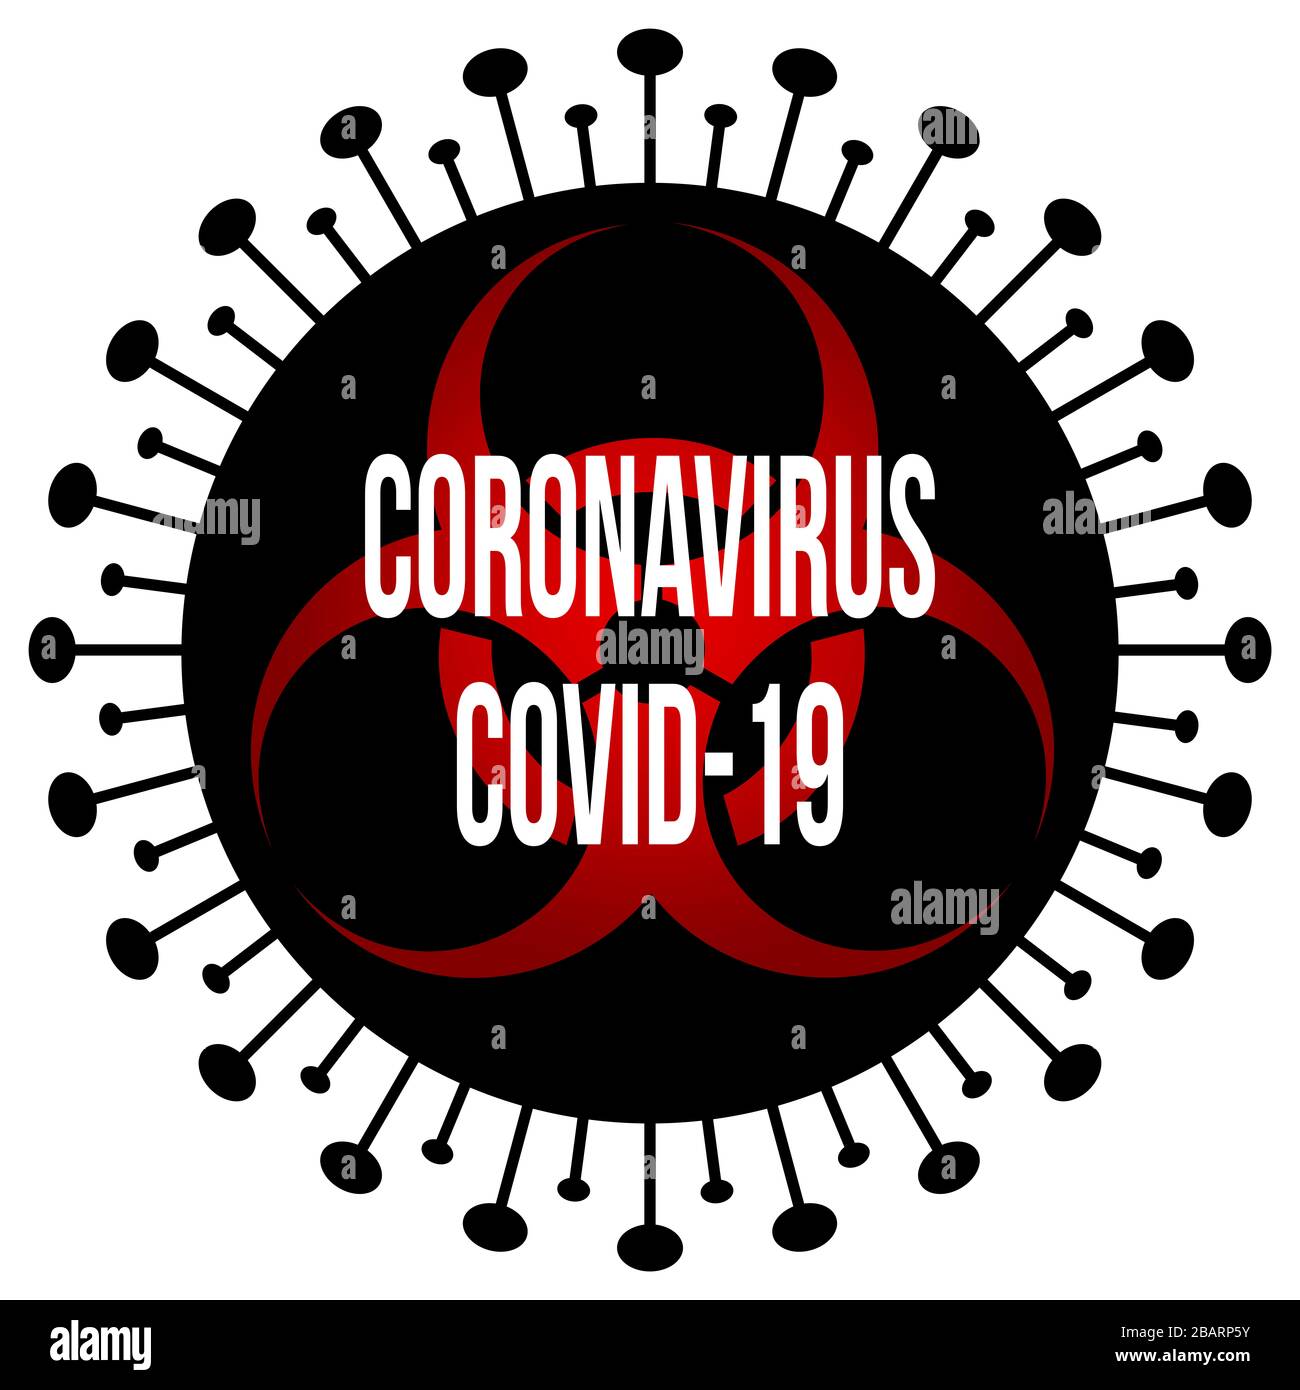 Un diseño gráfico de la enfermedad de Coronavirus (CoVid19) con un logotipo de peligro biológico negro y rojo en el centro para simbolizar el peligroso brote mundial de la enfermedad Foto de stock